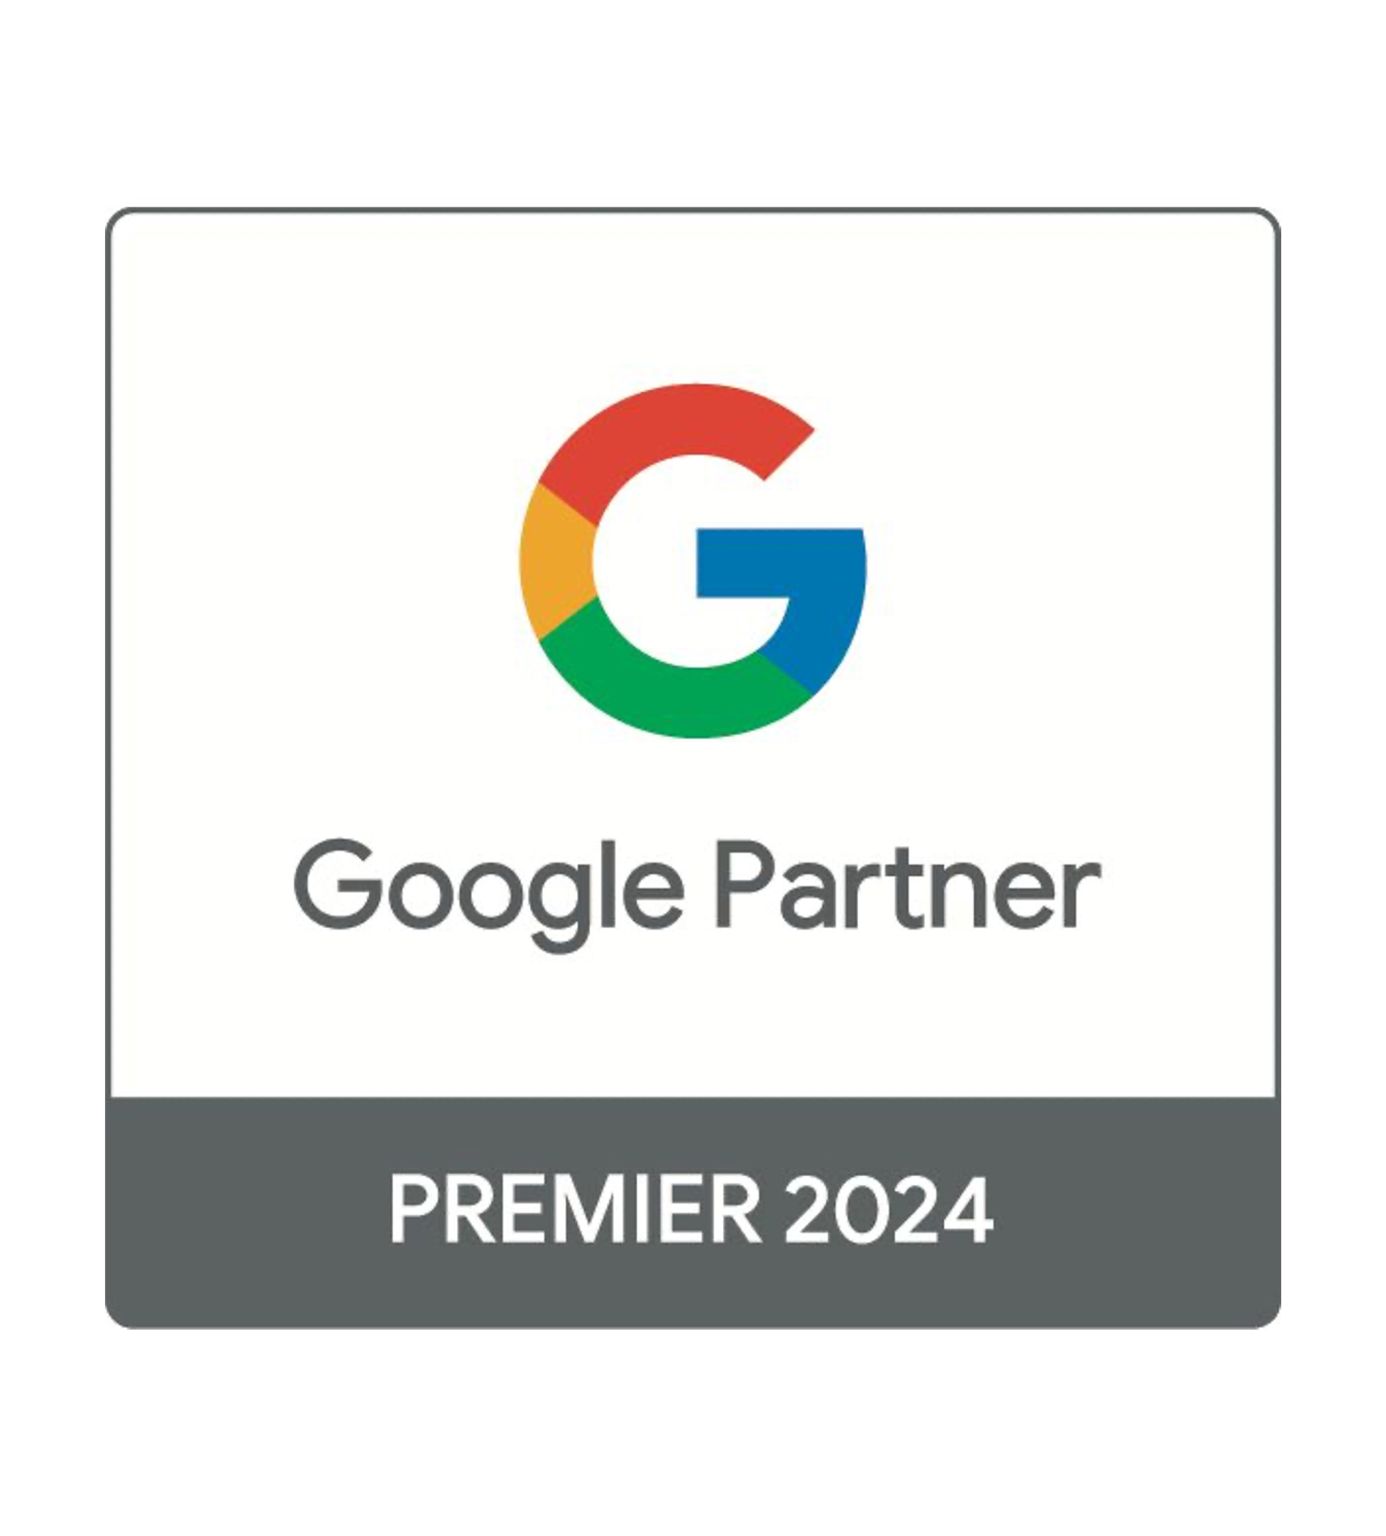 Nova Expressão volta a ser Partner Premier Google